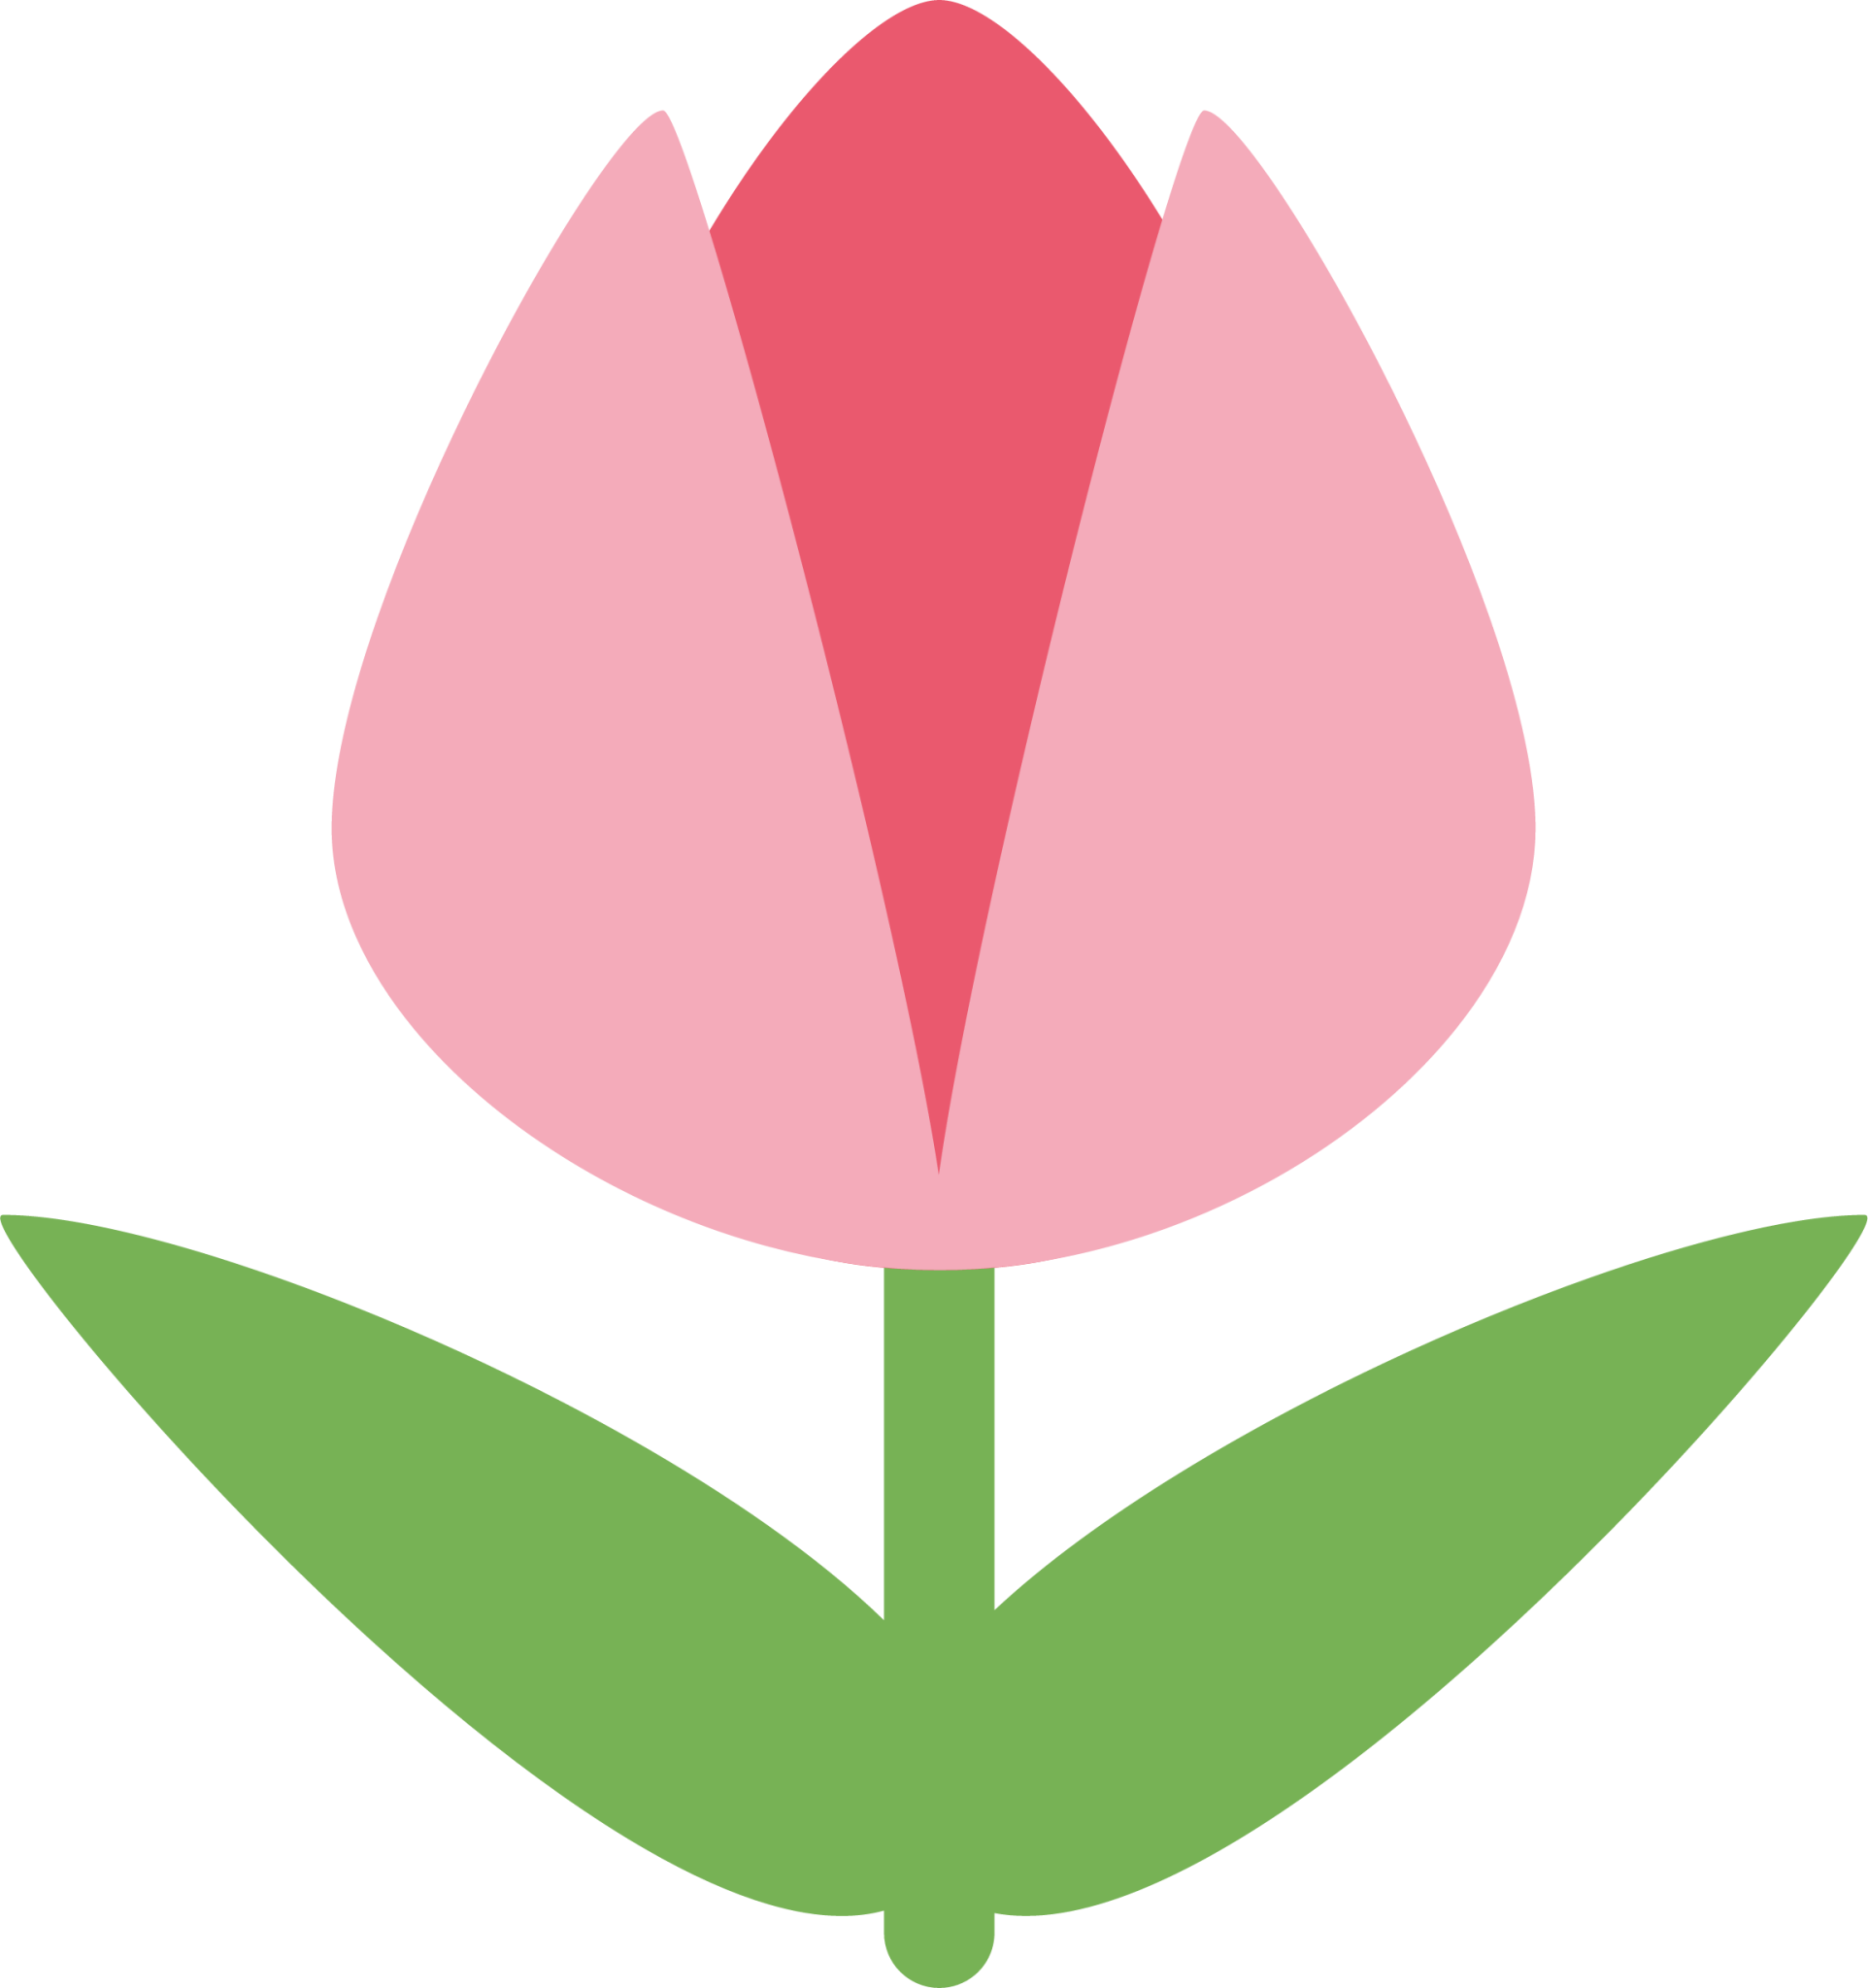 tulip emoji